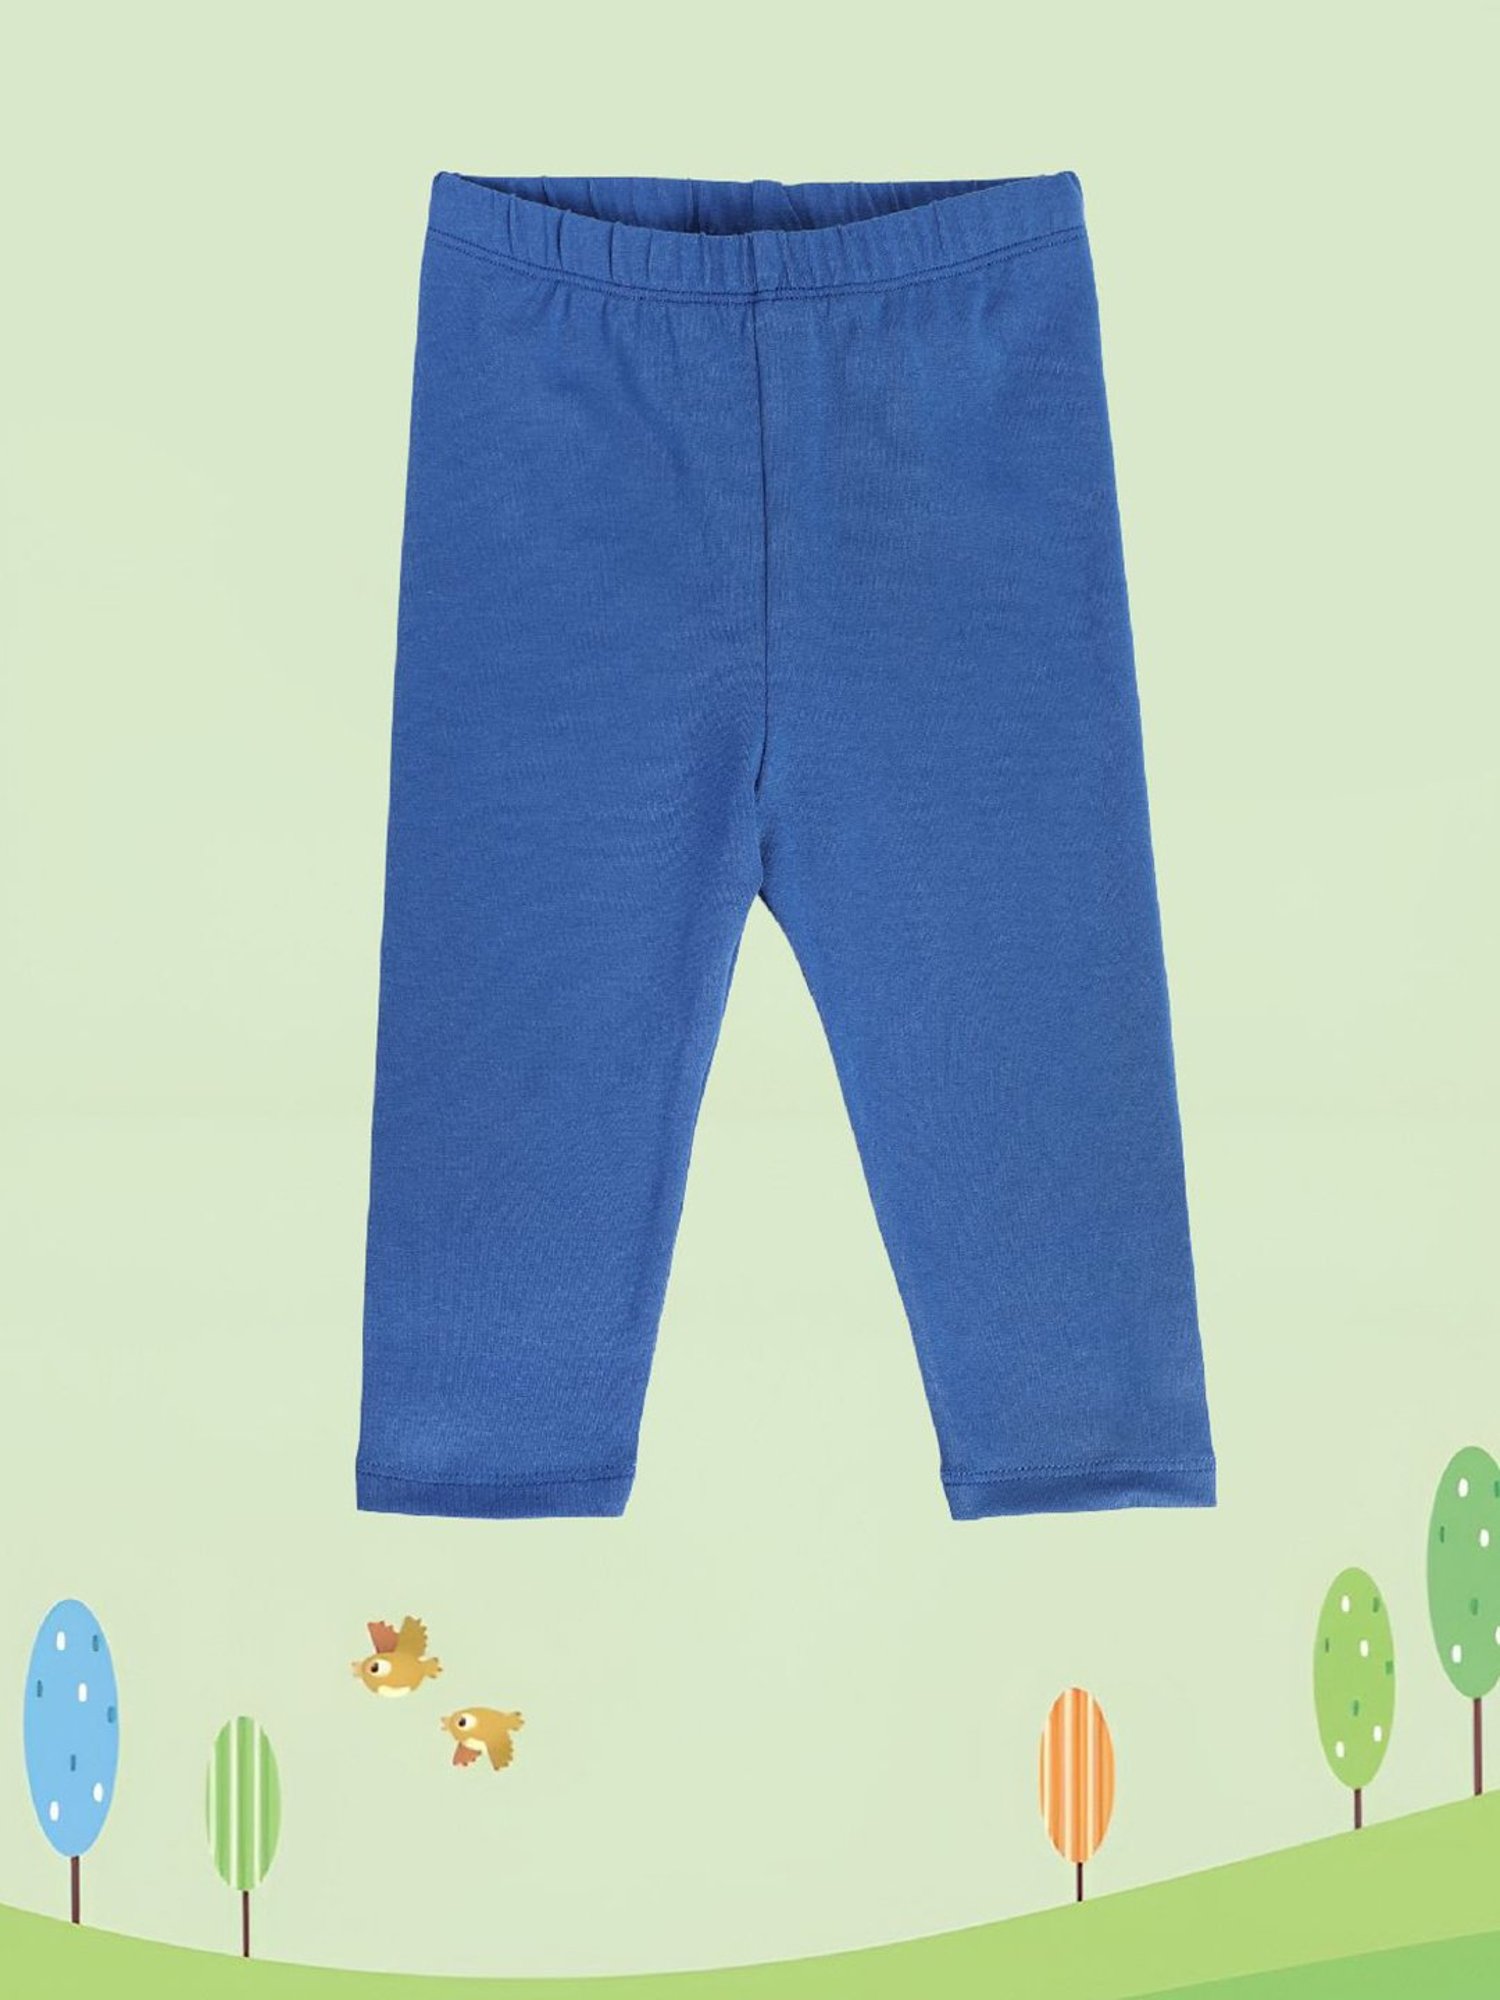 Blue Snakeskin Leggings for Kids - Teeny Chimp Kids Fashion